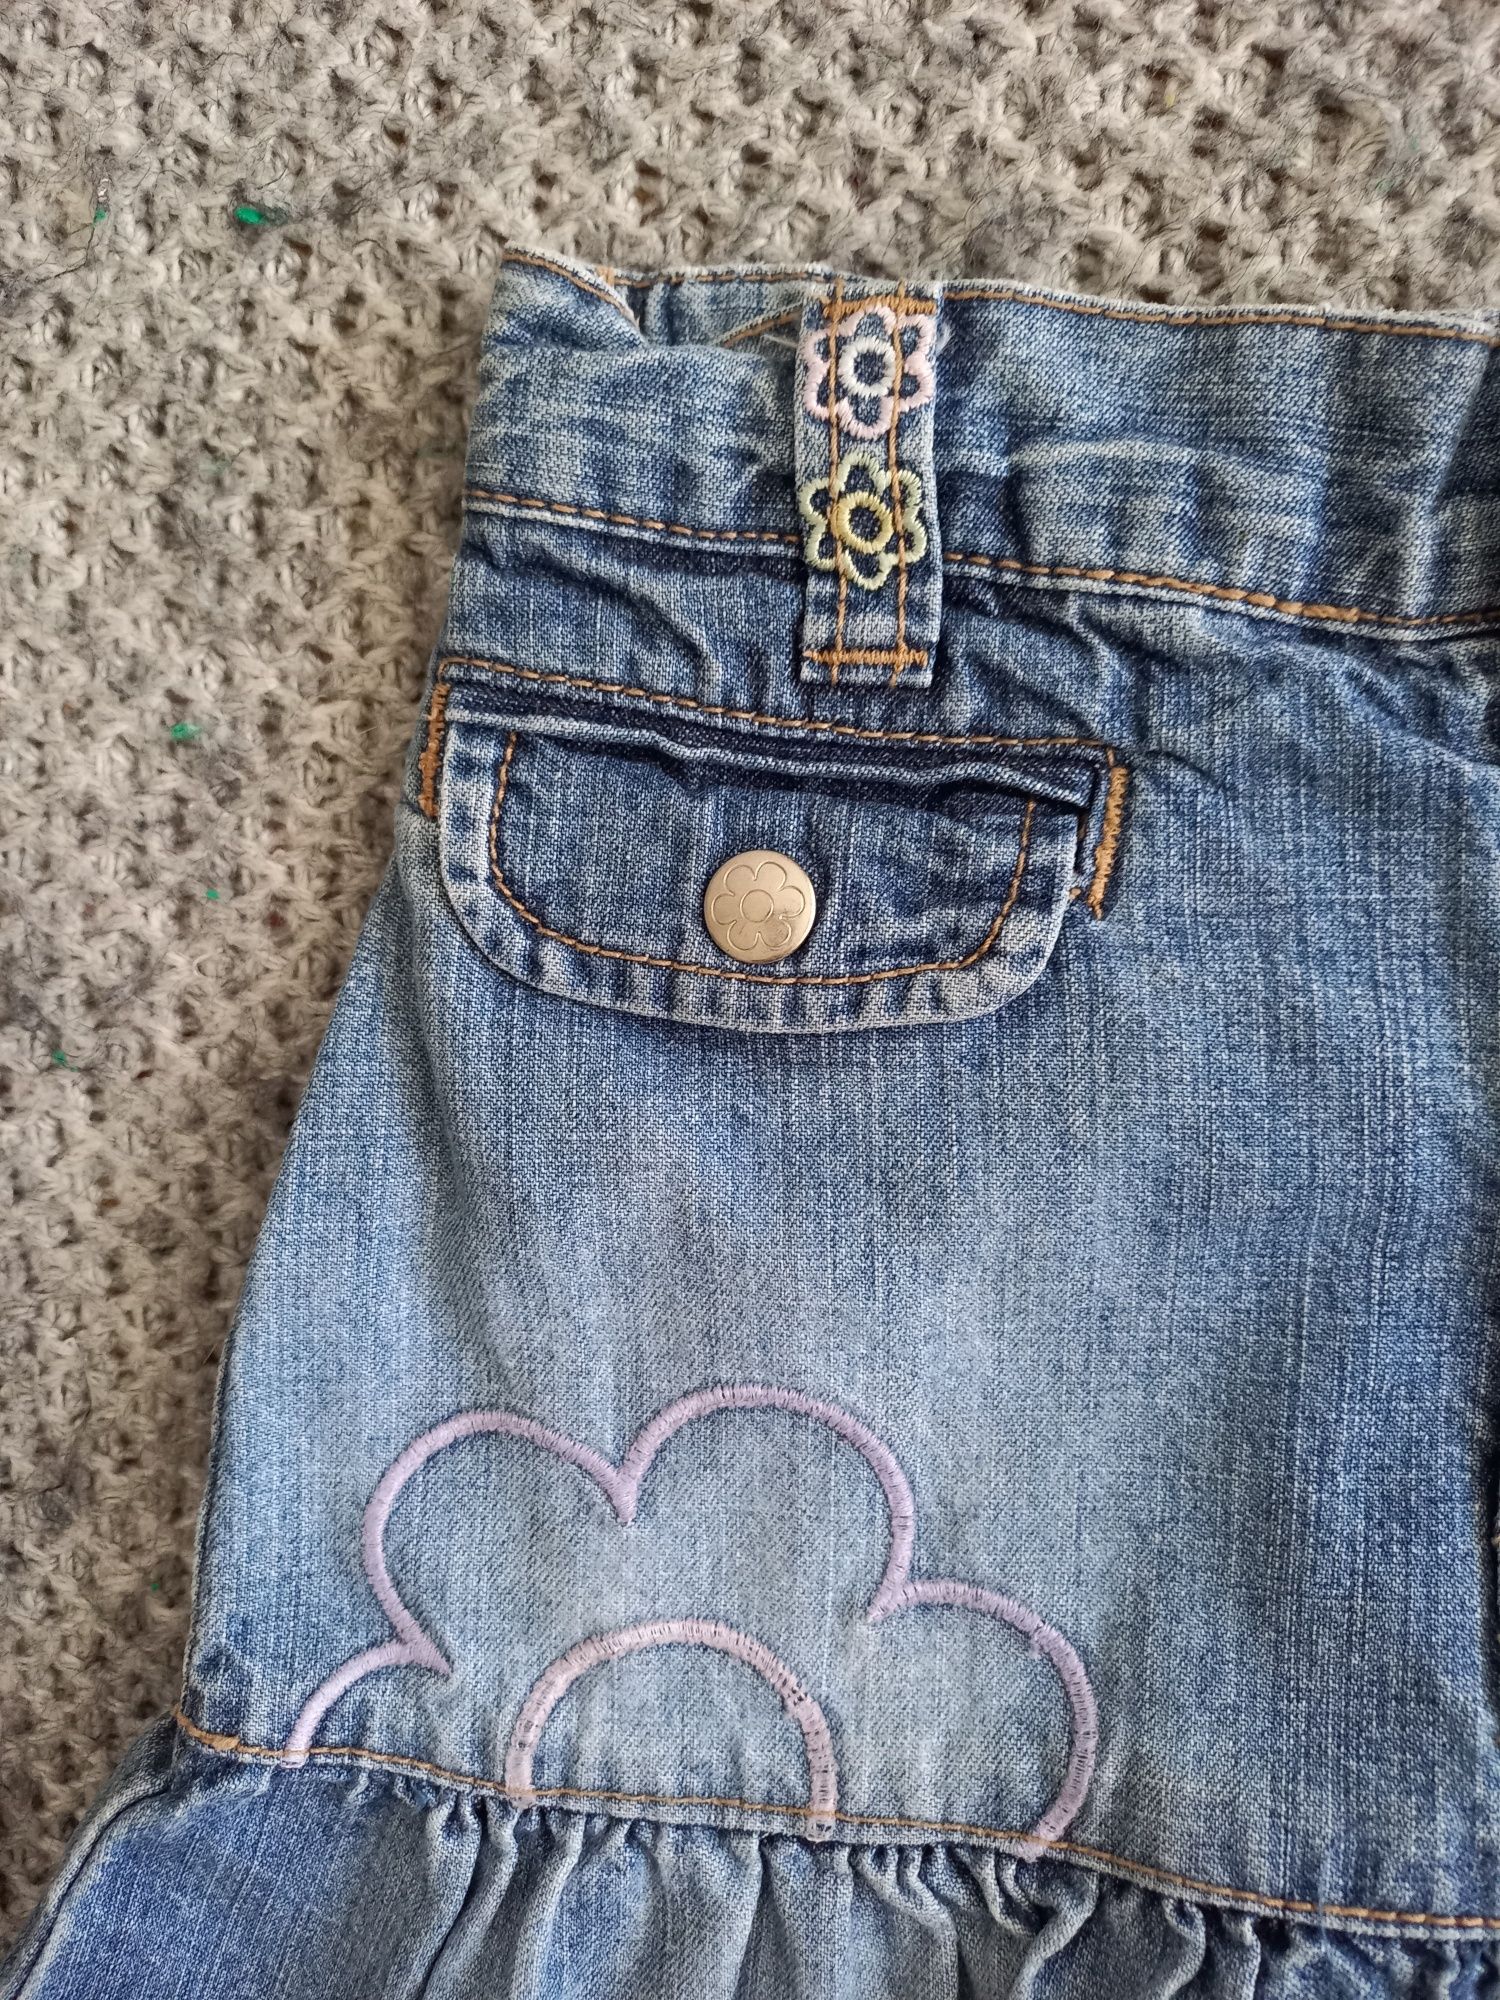 Дитяча джинсова спідниця H&M 1,5-2 роки для дівчинки